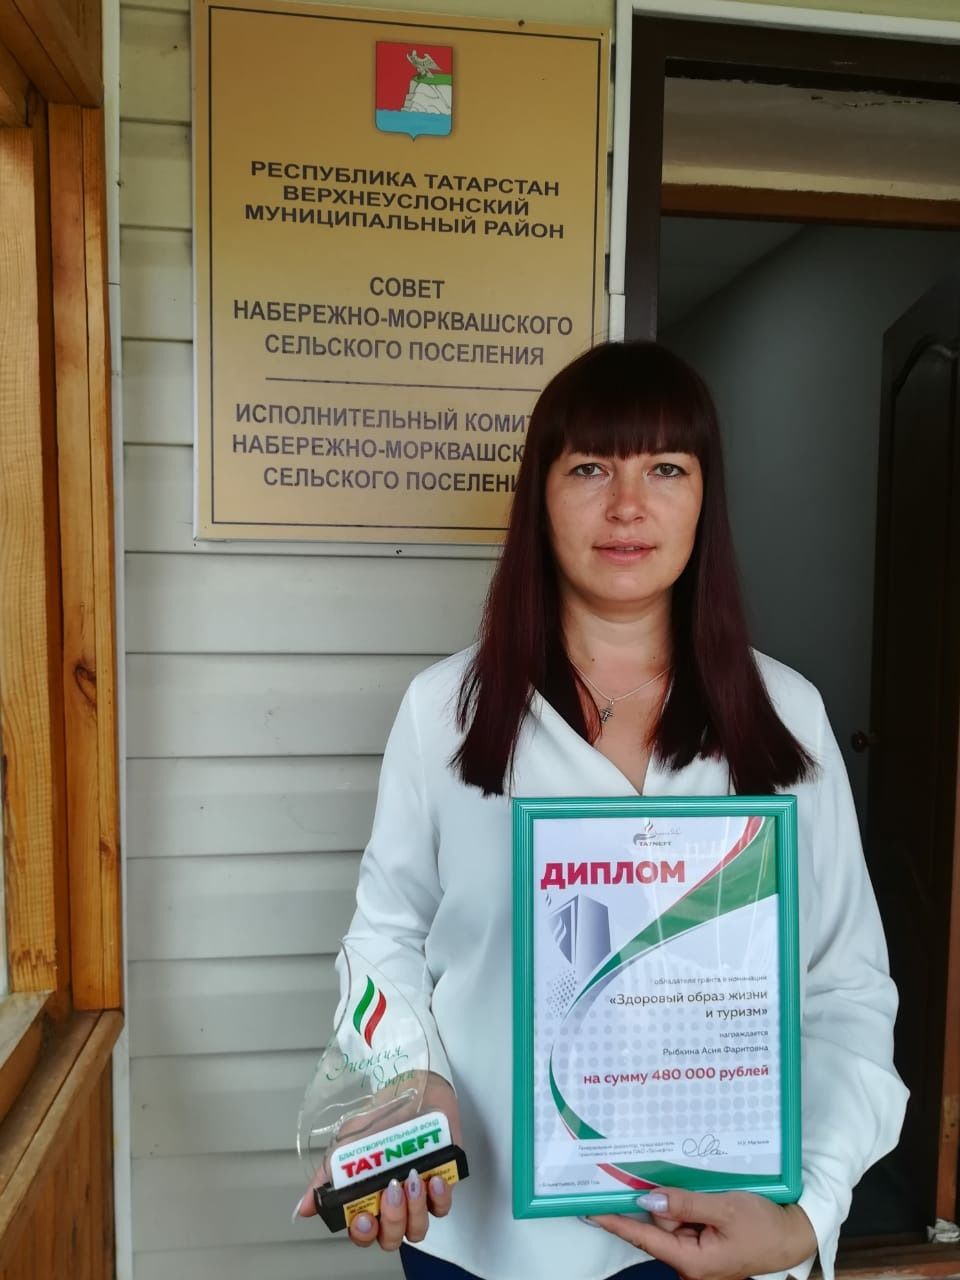 Местные проблемы в Набережноморквашском поселении решают за счет общественных инициатив.